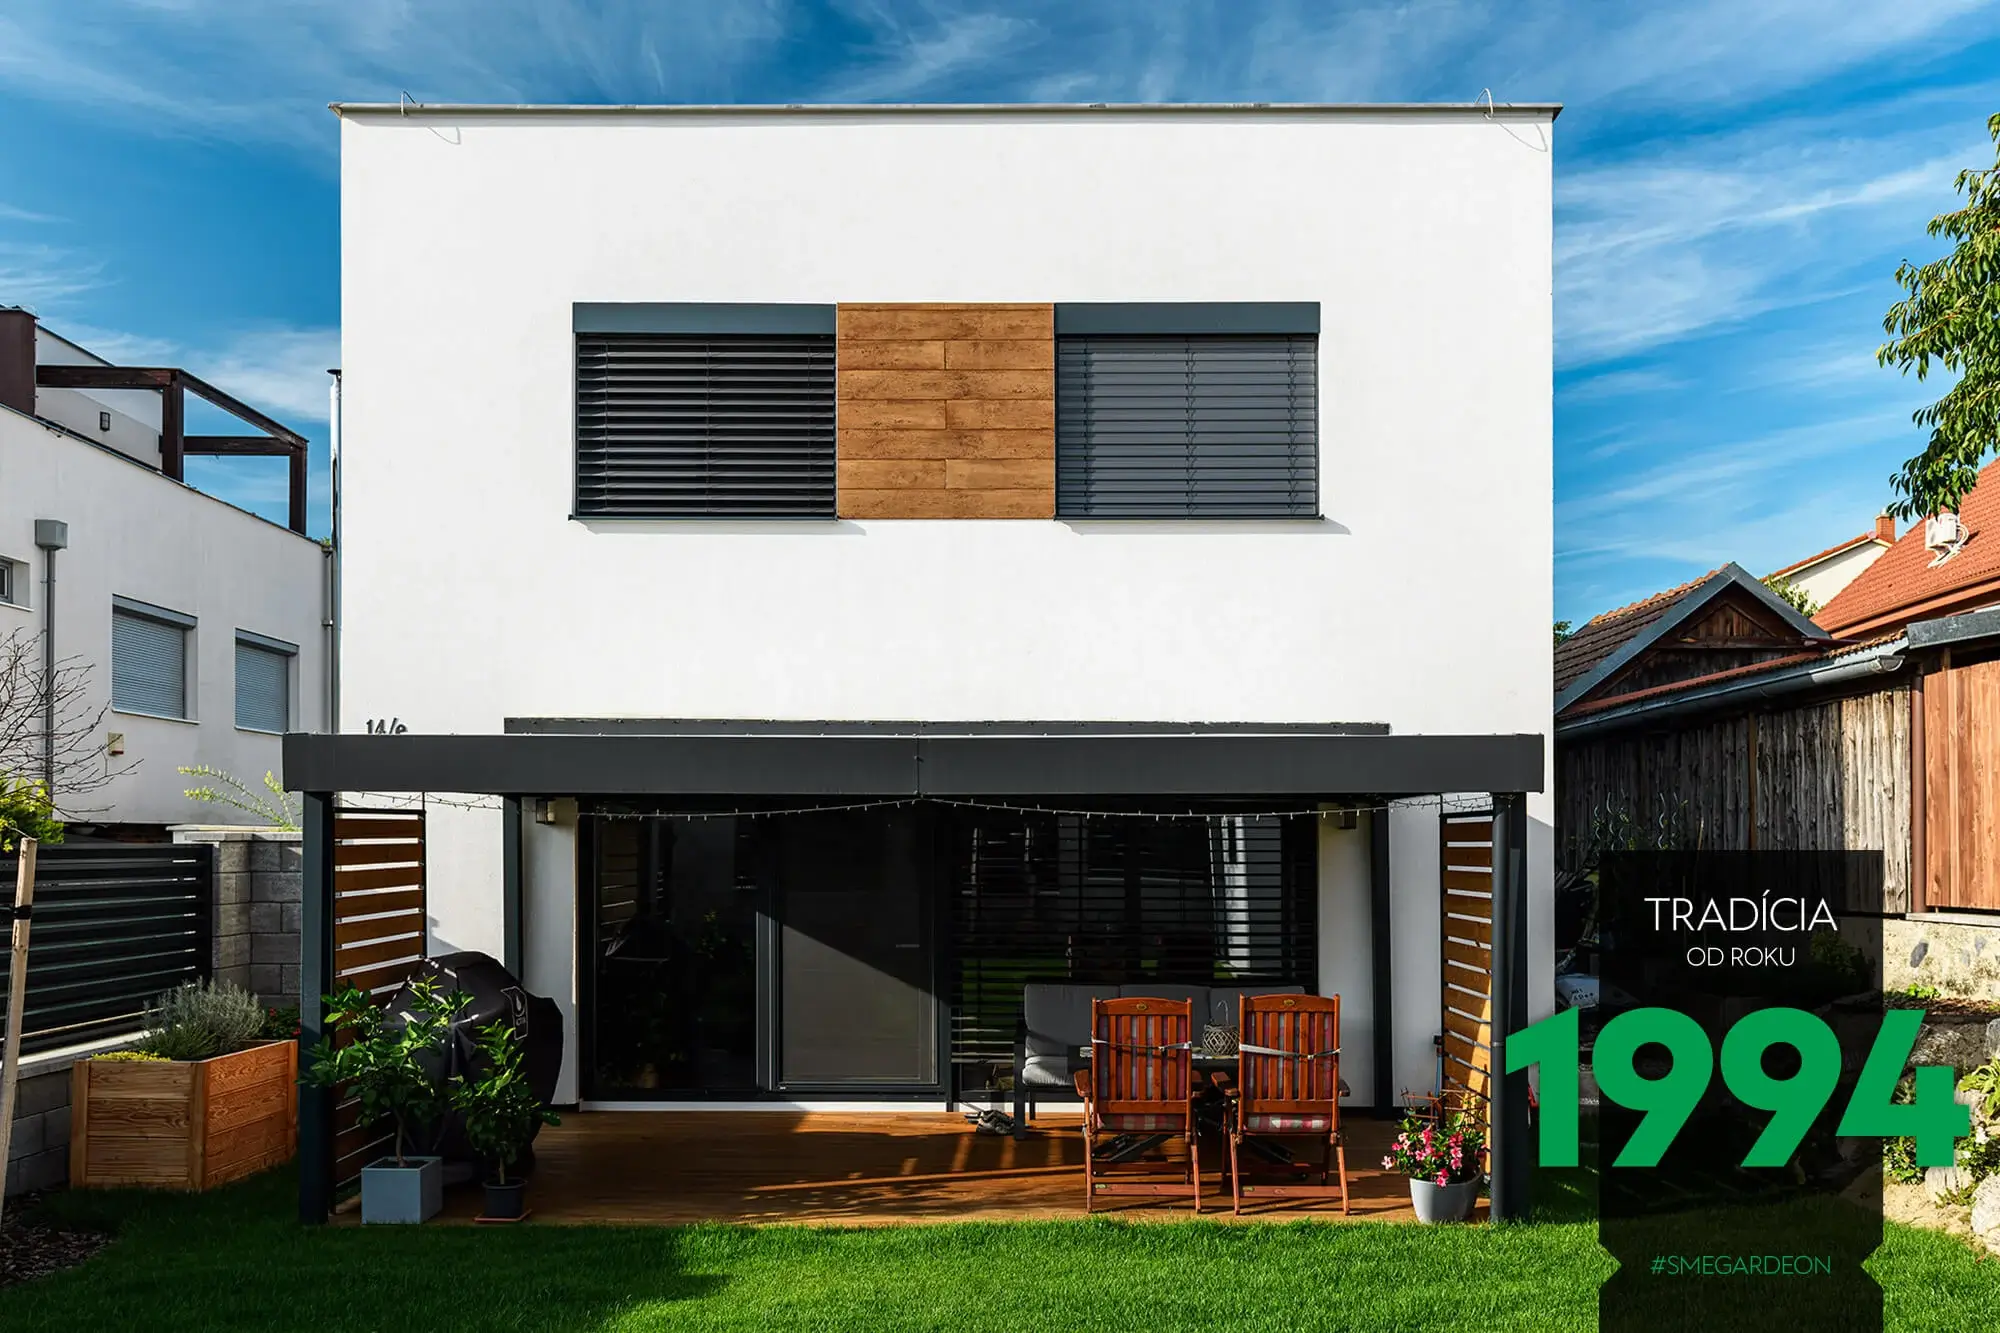 GARDEON Terrassenüberdachung aus Stahl bei einem modernen, neuen Familienhaus